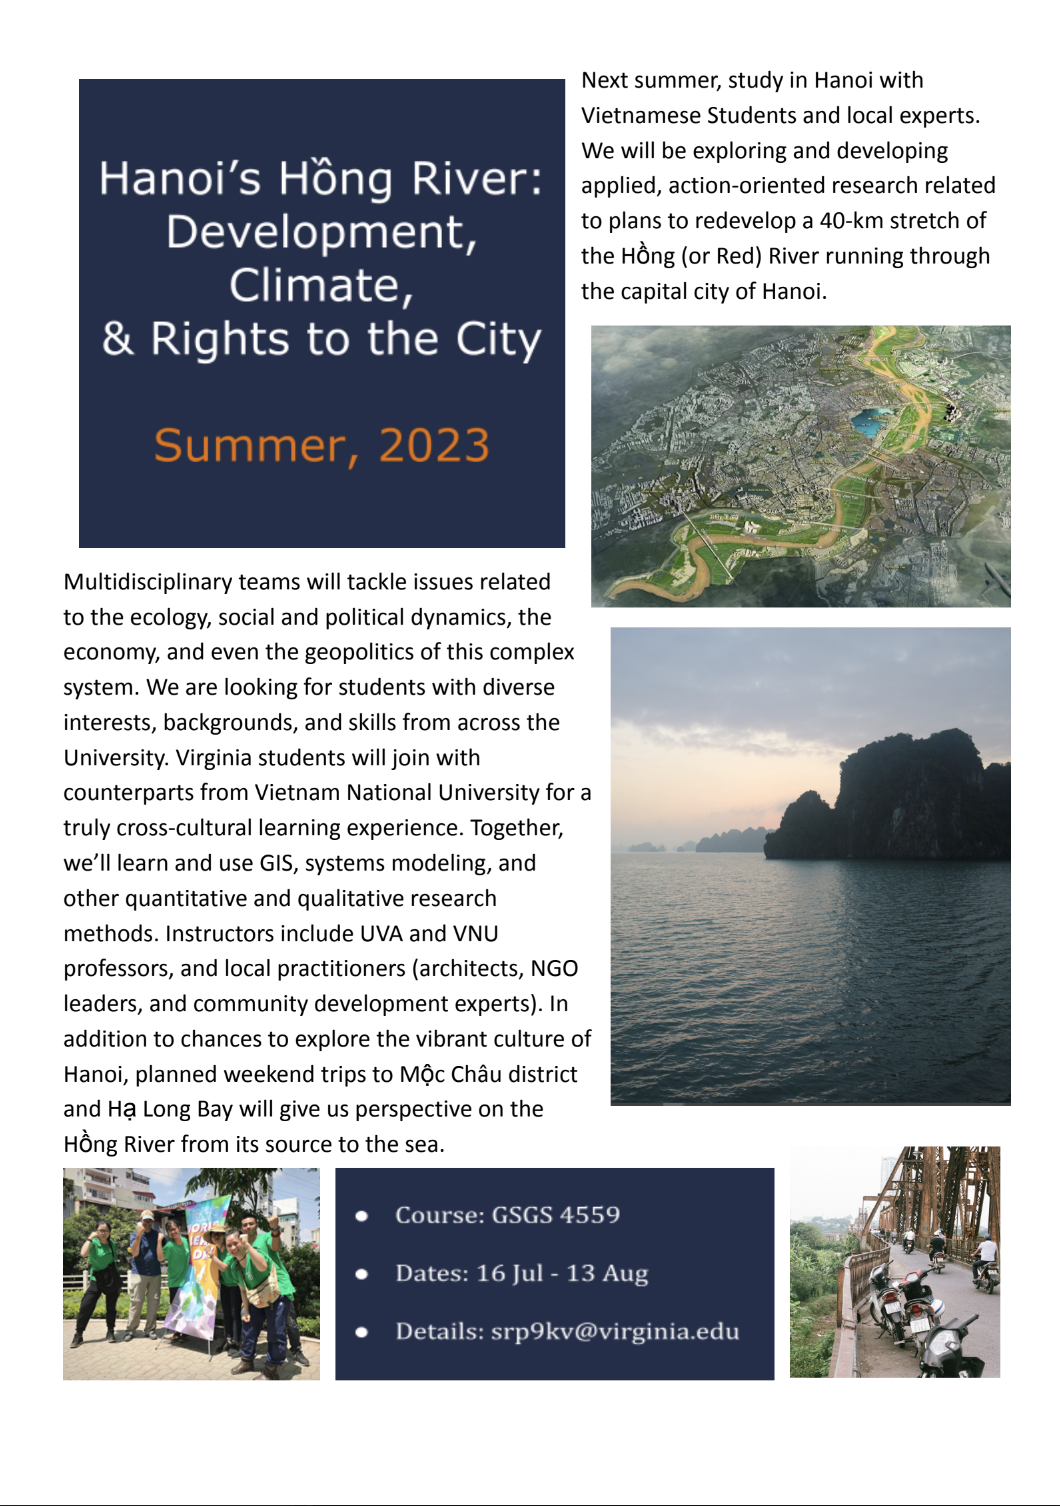 UVA in Vietnam: Summer 2023